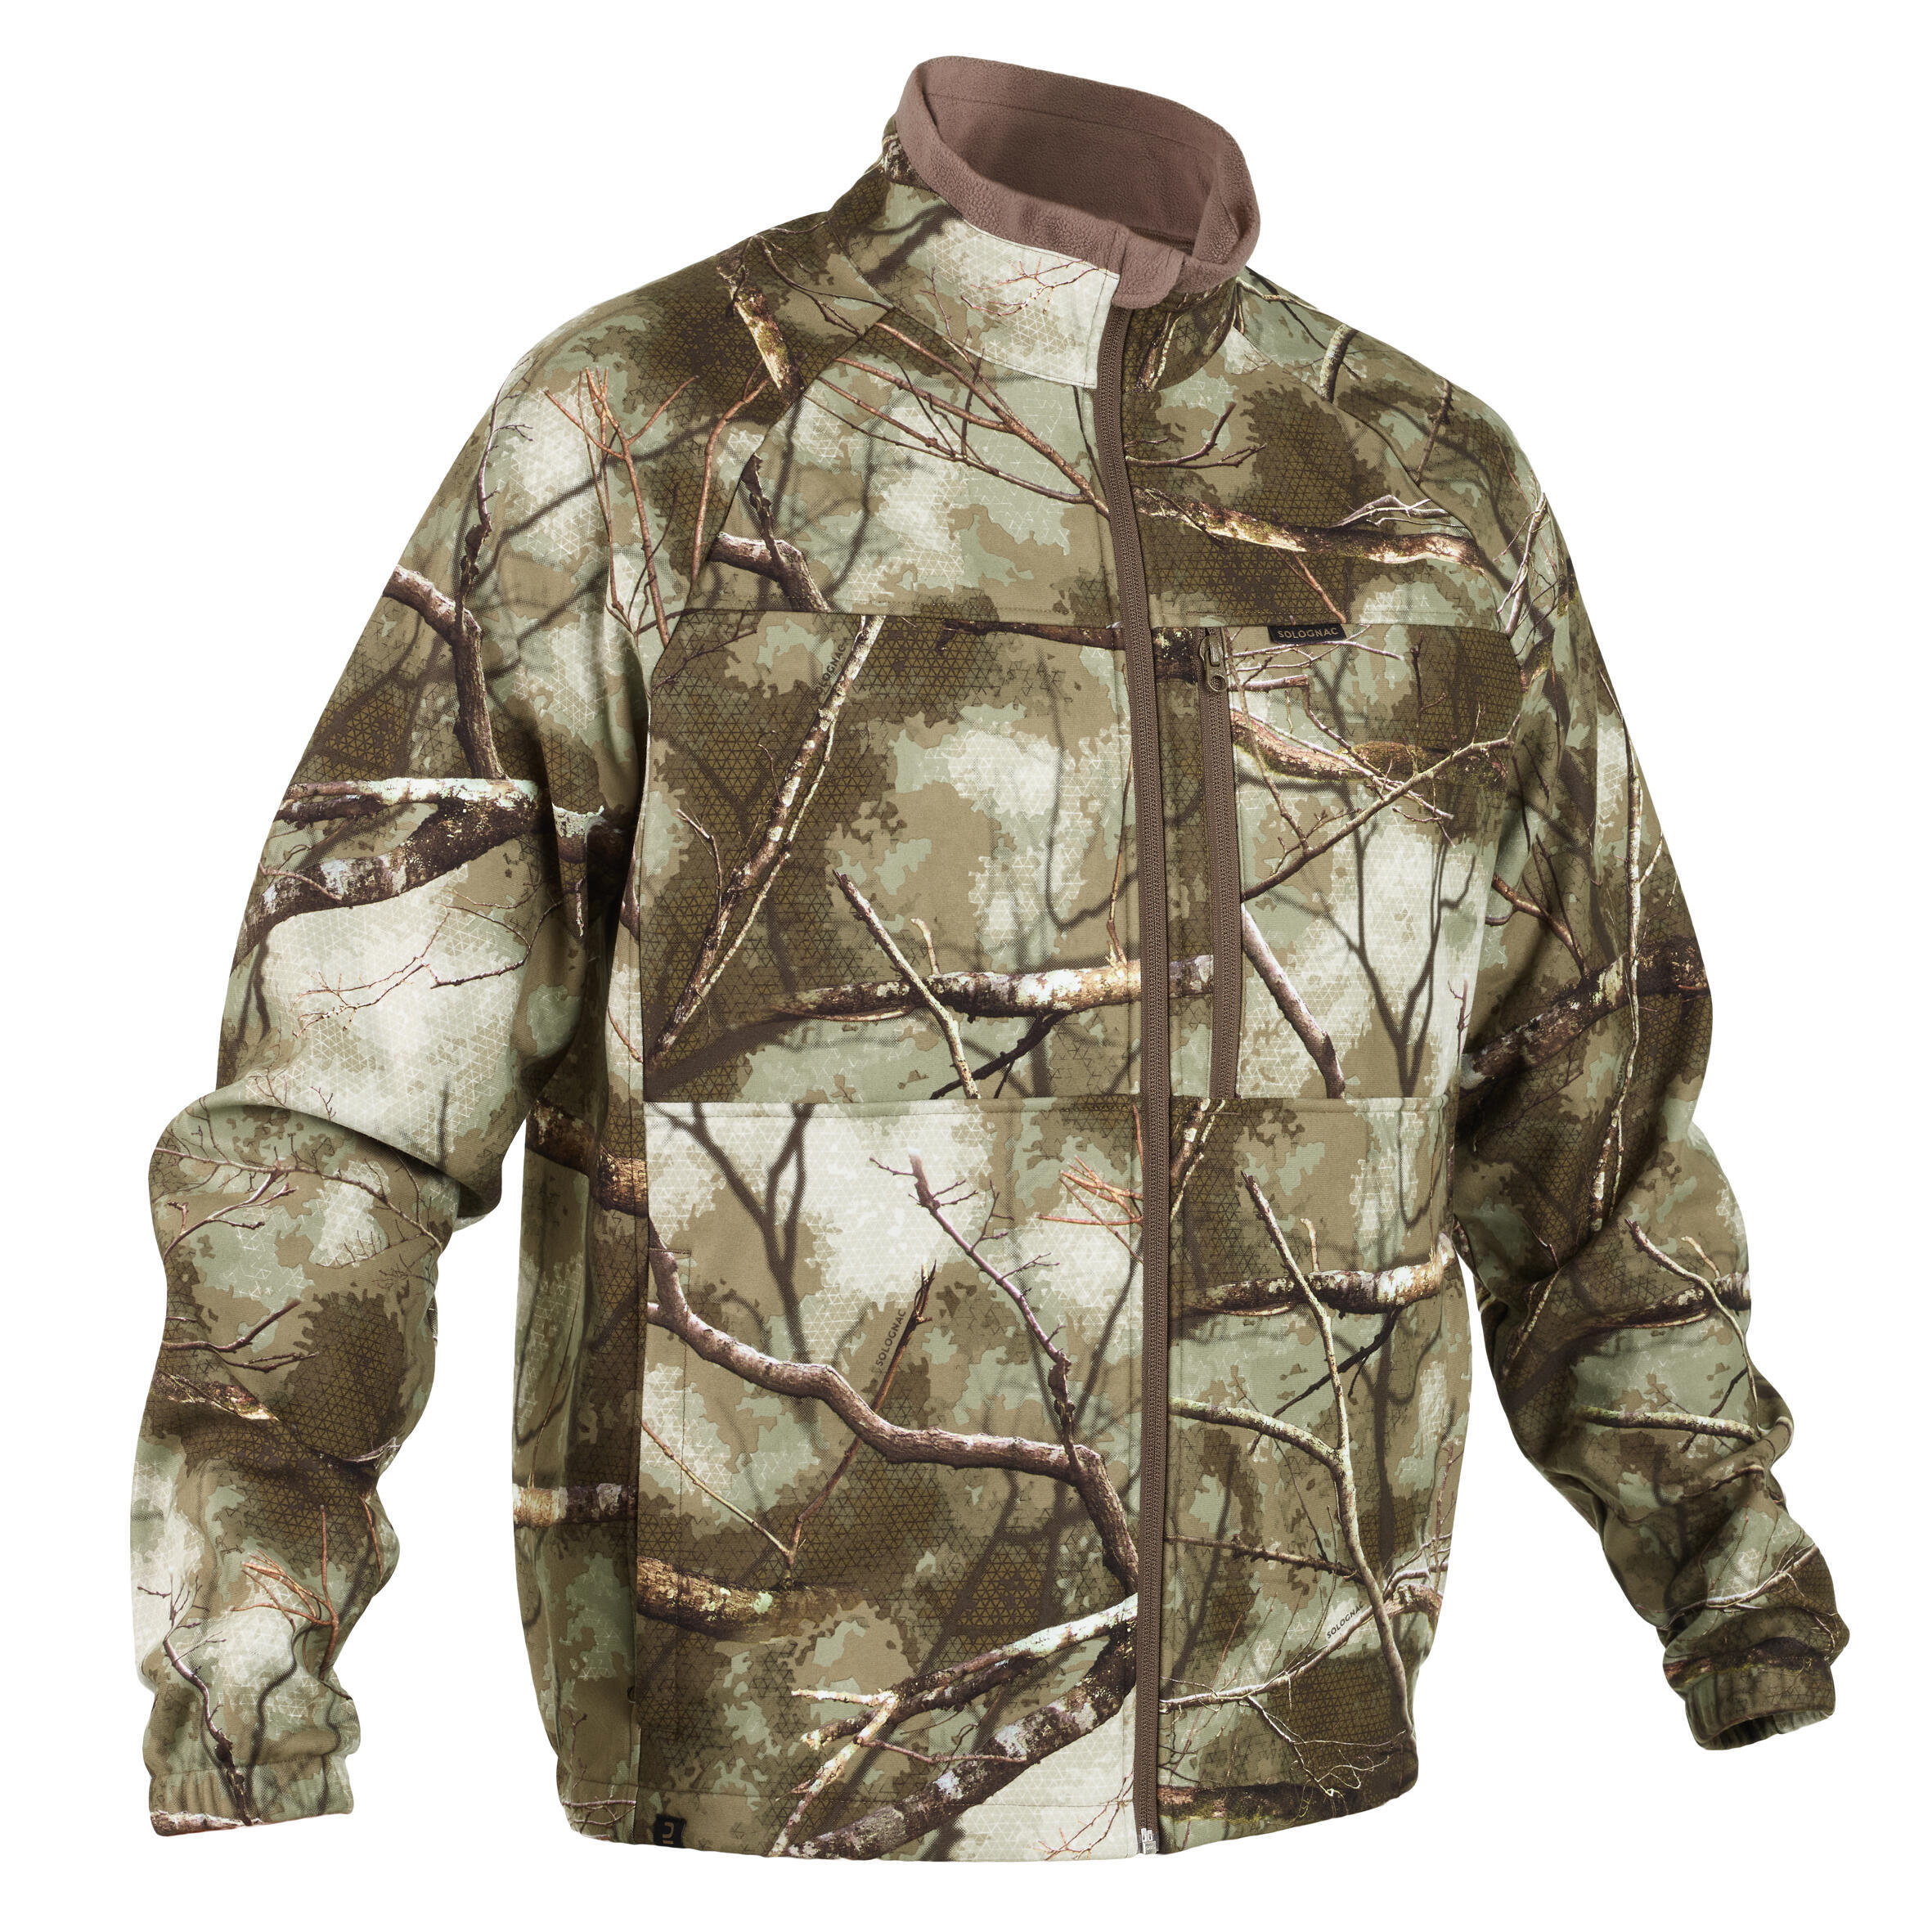 Охотничья флисовая куртка 300 TREEMETIC теплая, тихая, водоотталкивающая камуфляжная SOLOGNAC, камуфляж